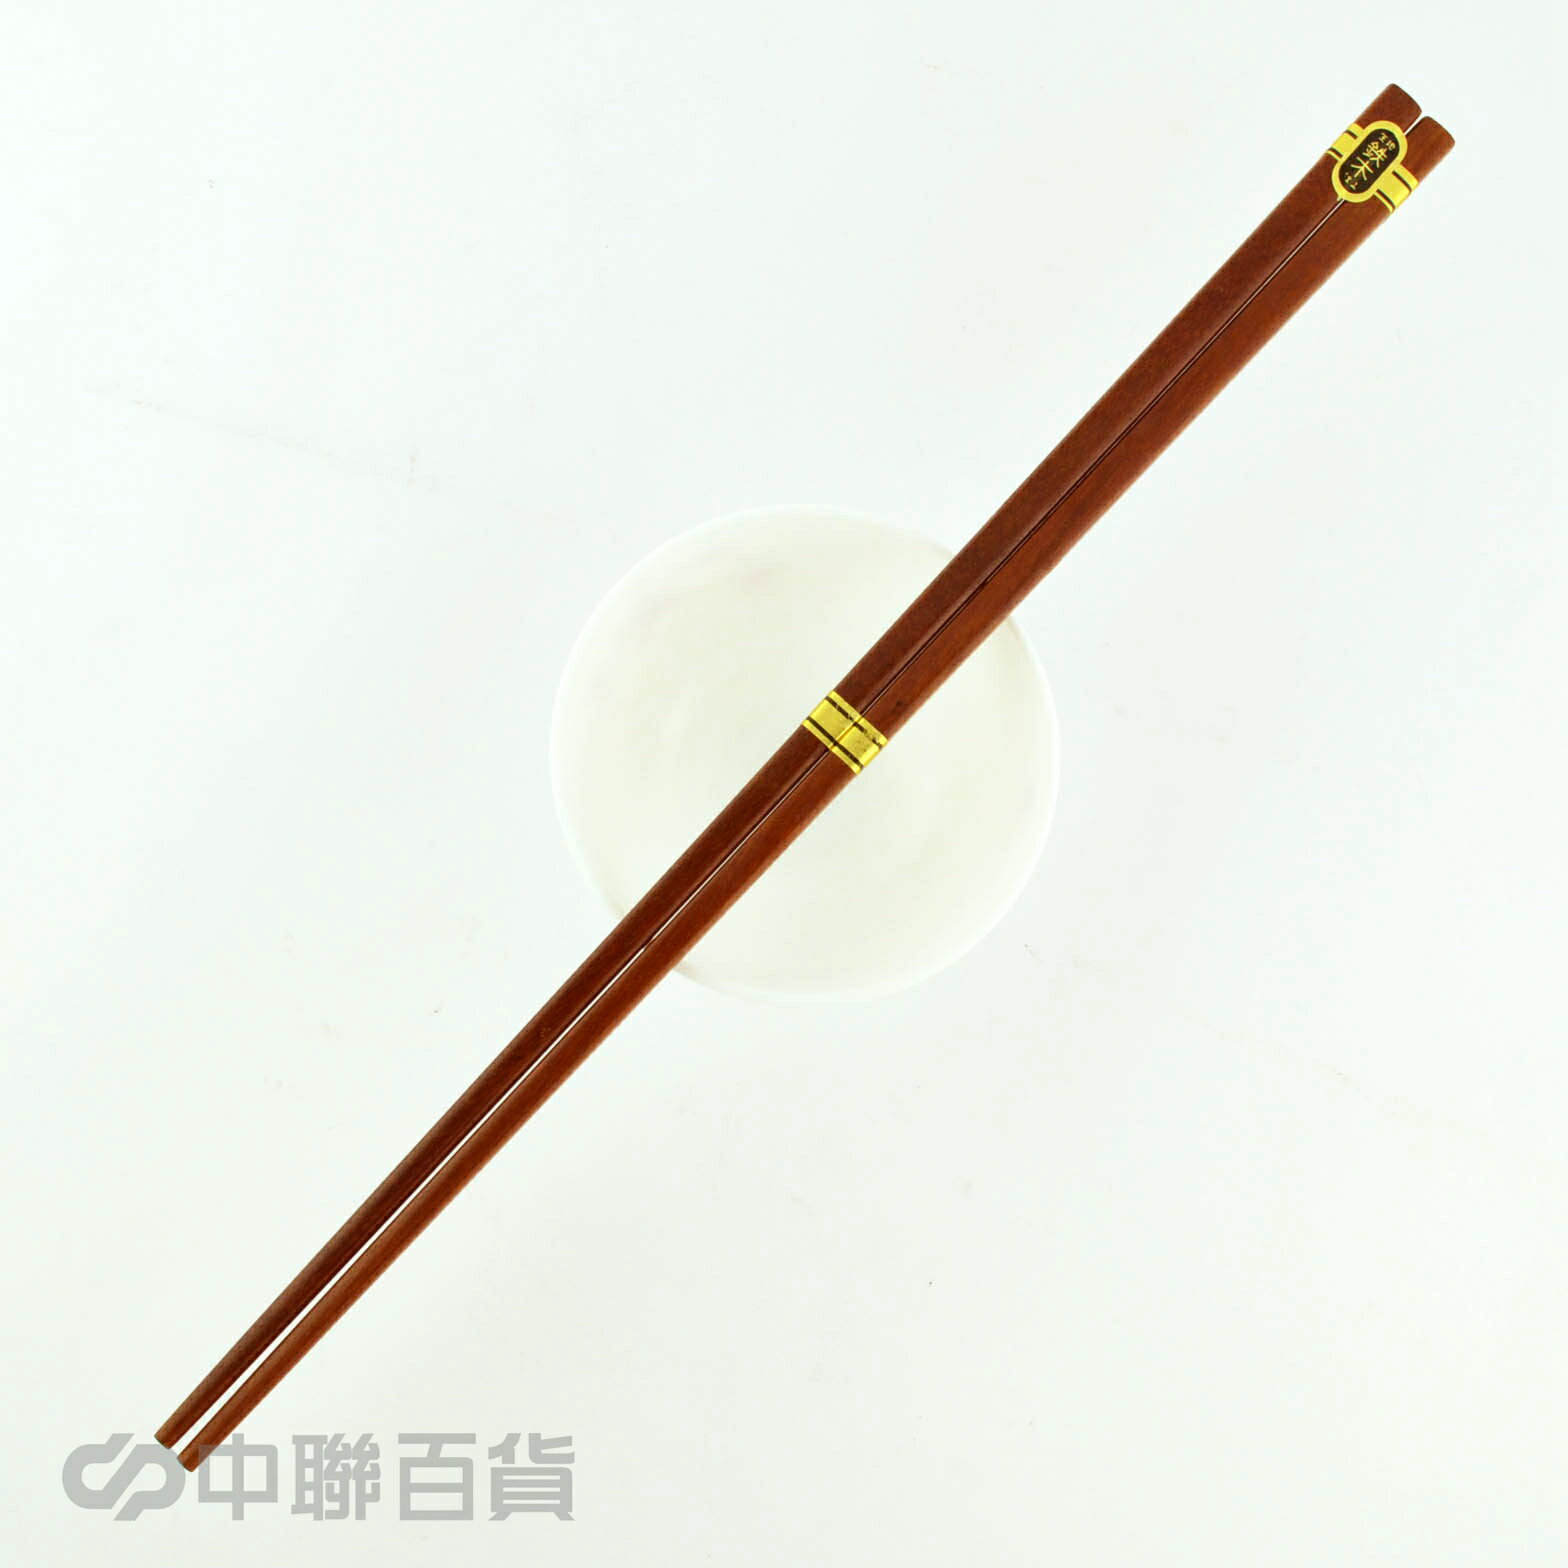 上龍鐵木調理筷(41cm)1雙 TL-1071 料理筷 煮麵筷 長筷